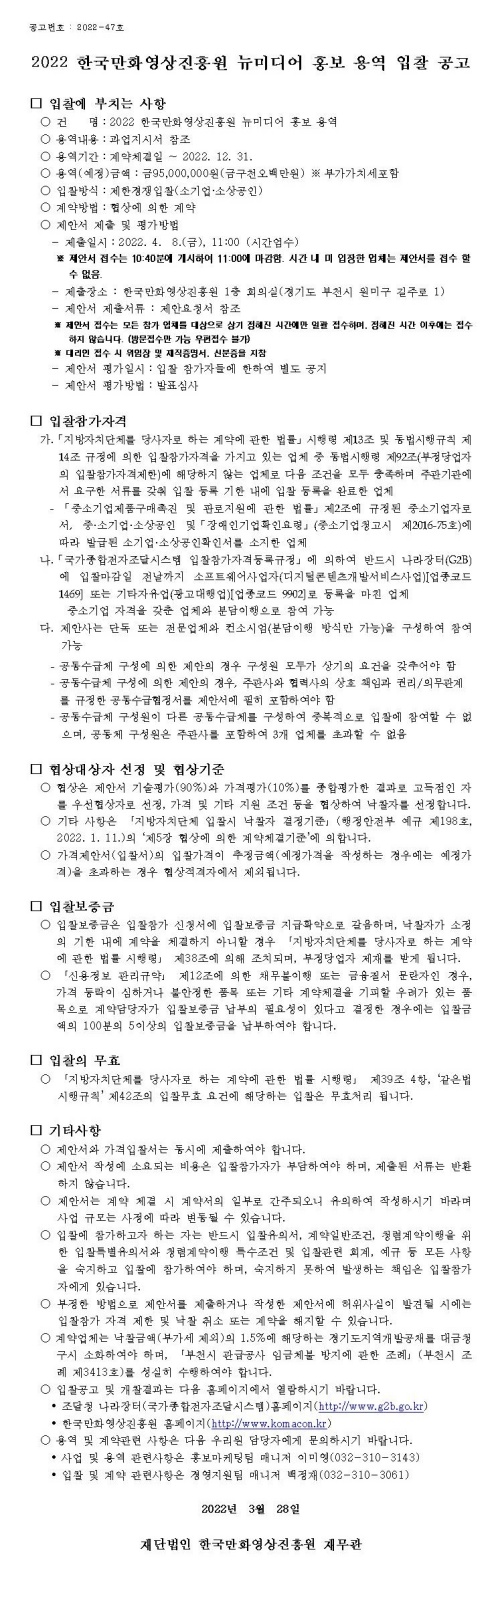 2022 한국만화영상진흥원 뉴미디어 홍보 용역 입찰 공고